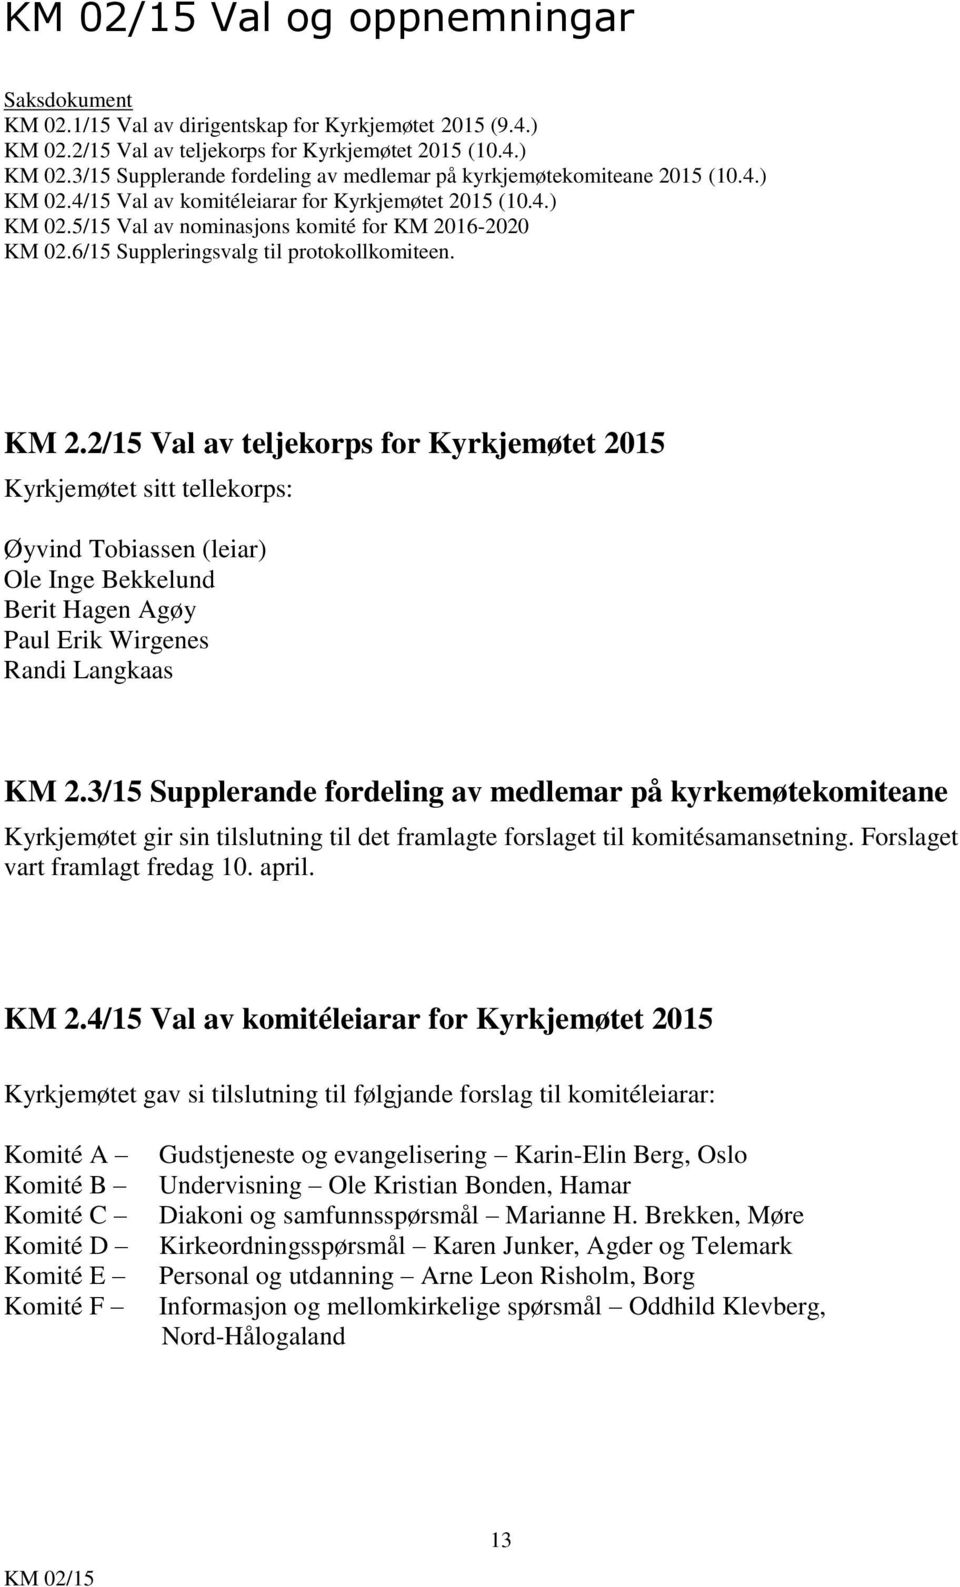 16-2020 KM 02.6/15 Suppleringsvalg til protokollkomiteen. KM 2.